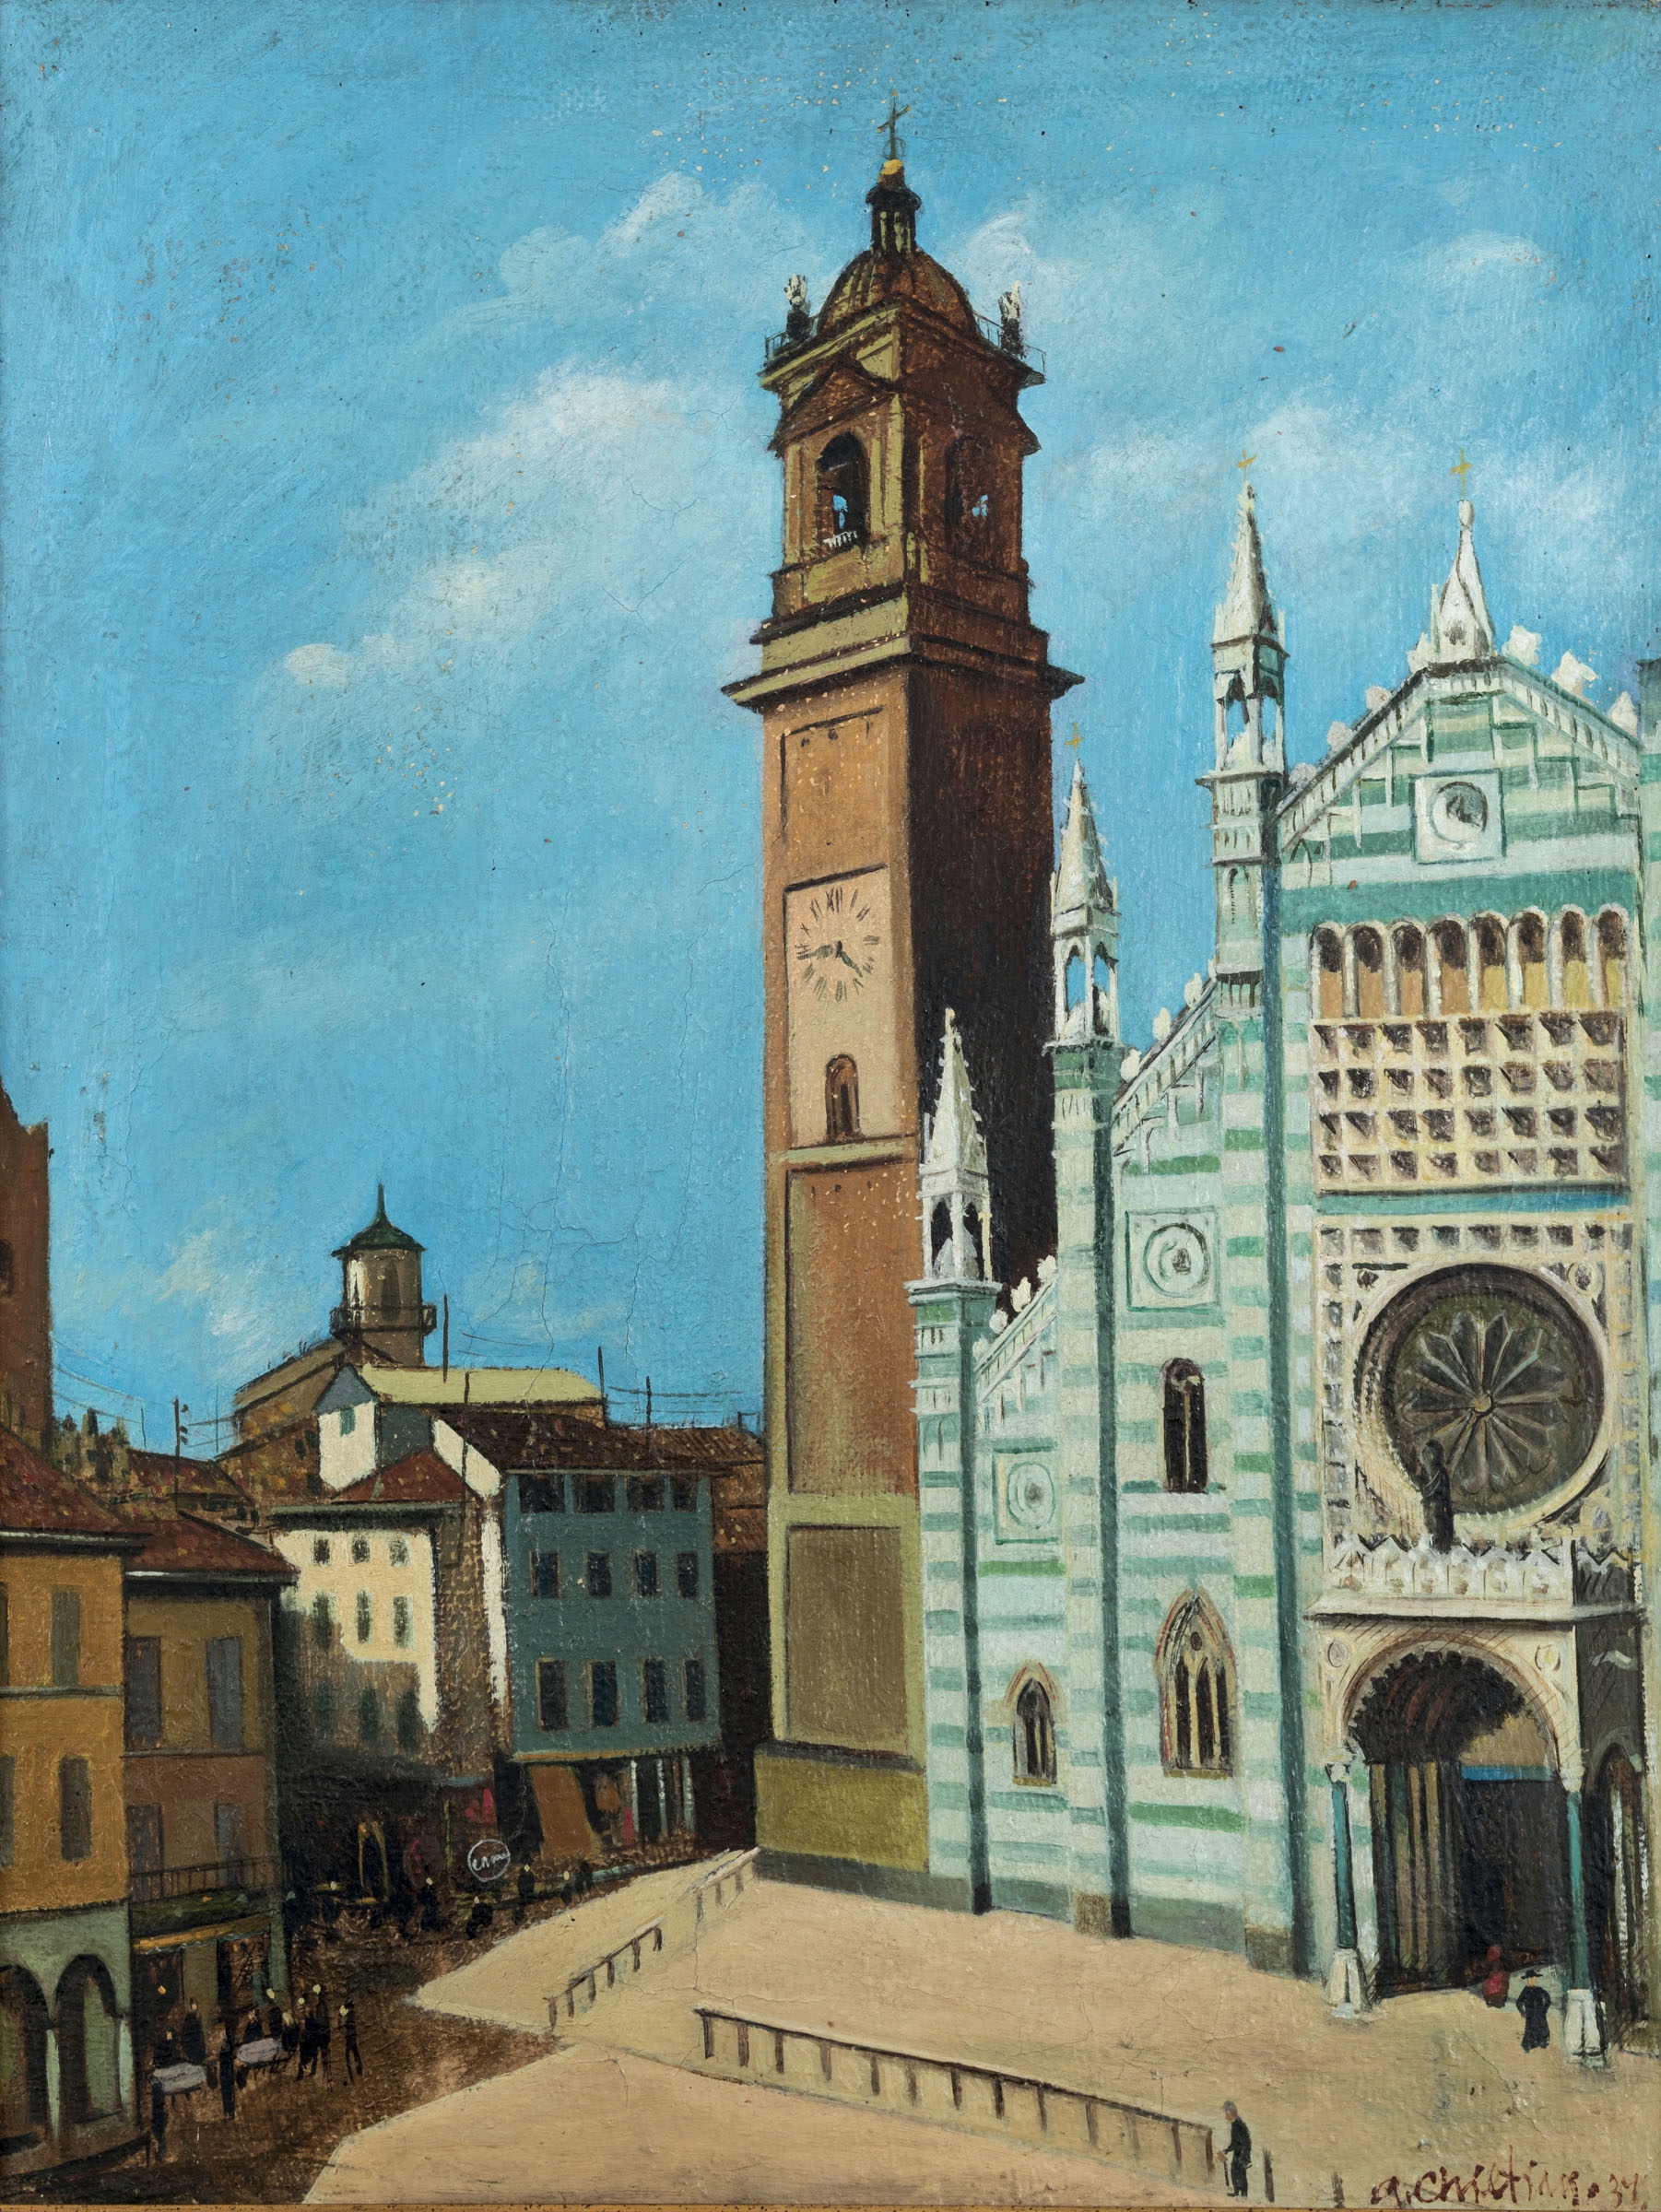 Duomo di Monza by Gregorio Sciltian, 1939